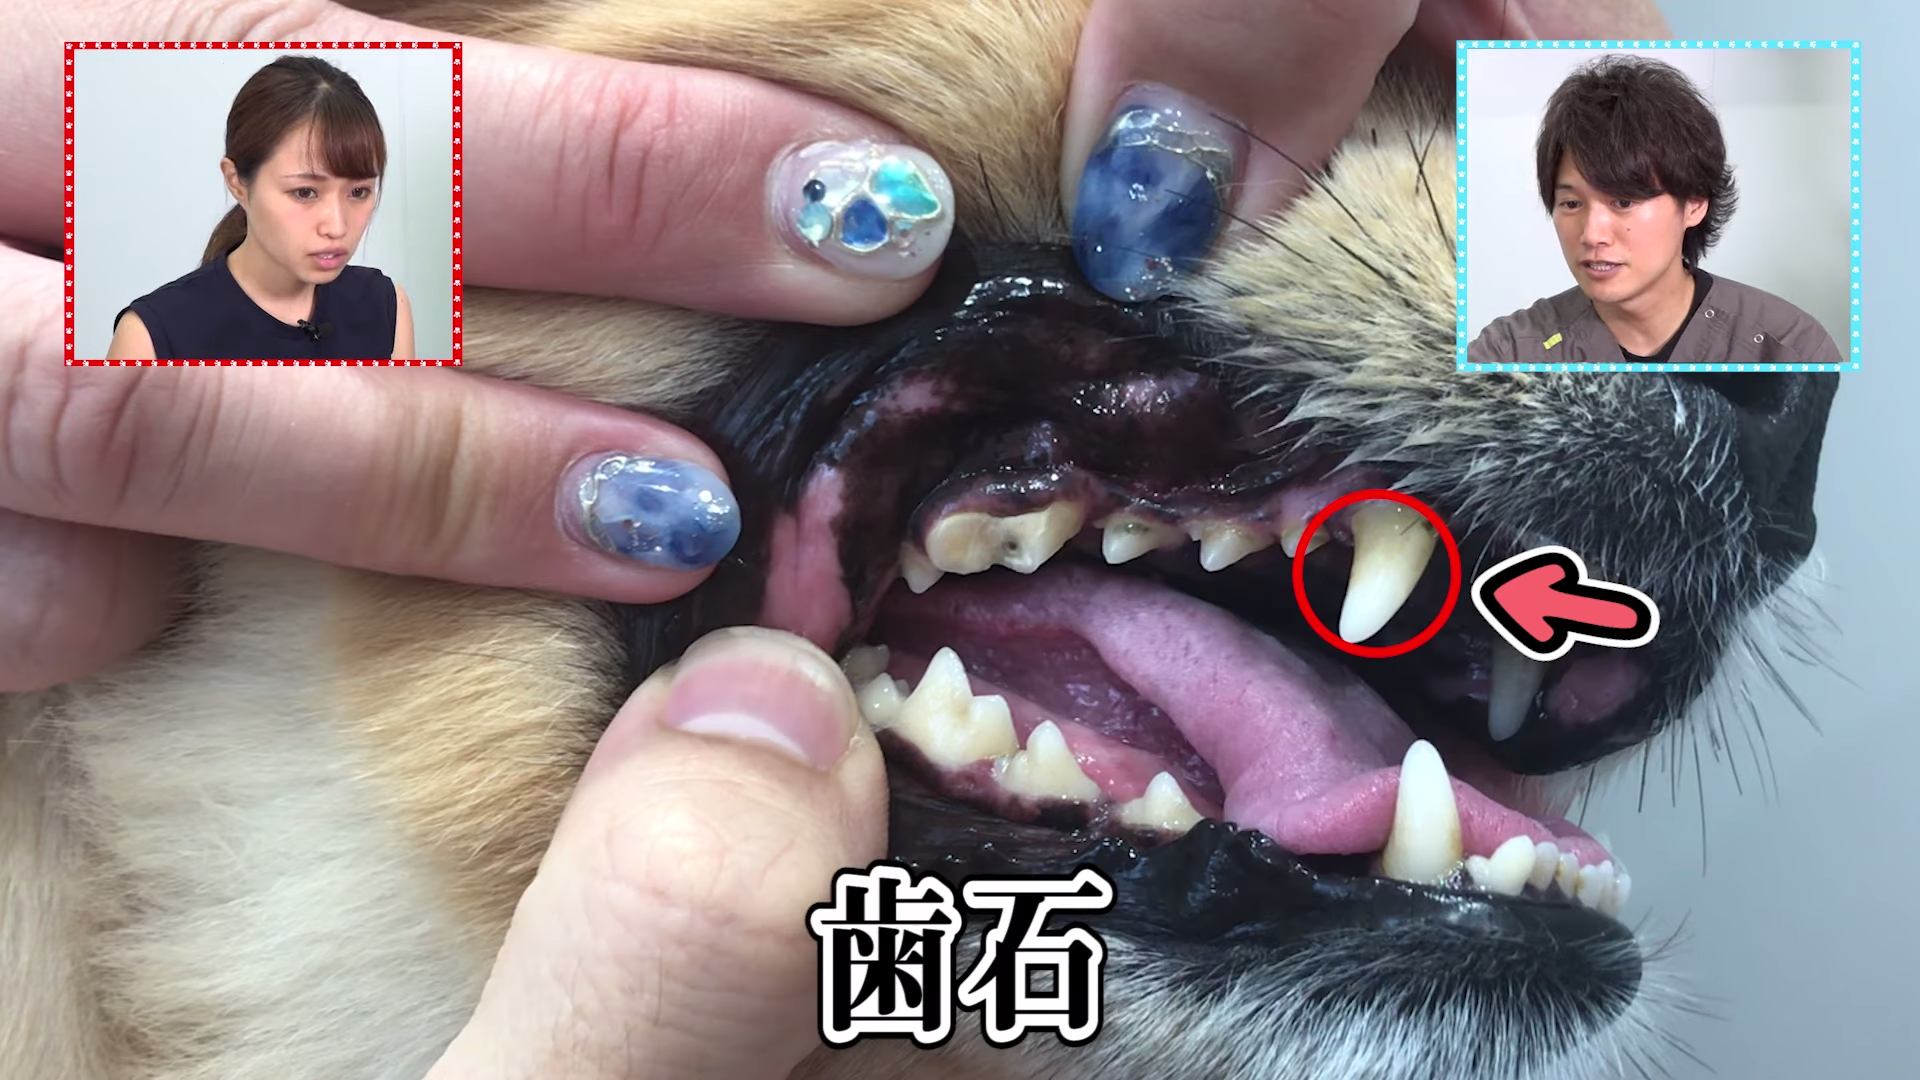 観覧注意 犬の歯が折れたら死に至る 対処法を学べ Vol 2 Wolves Hand動物病院グループ